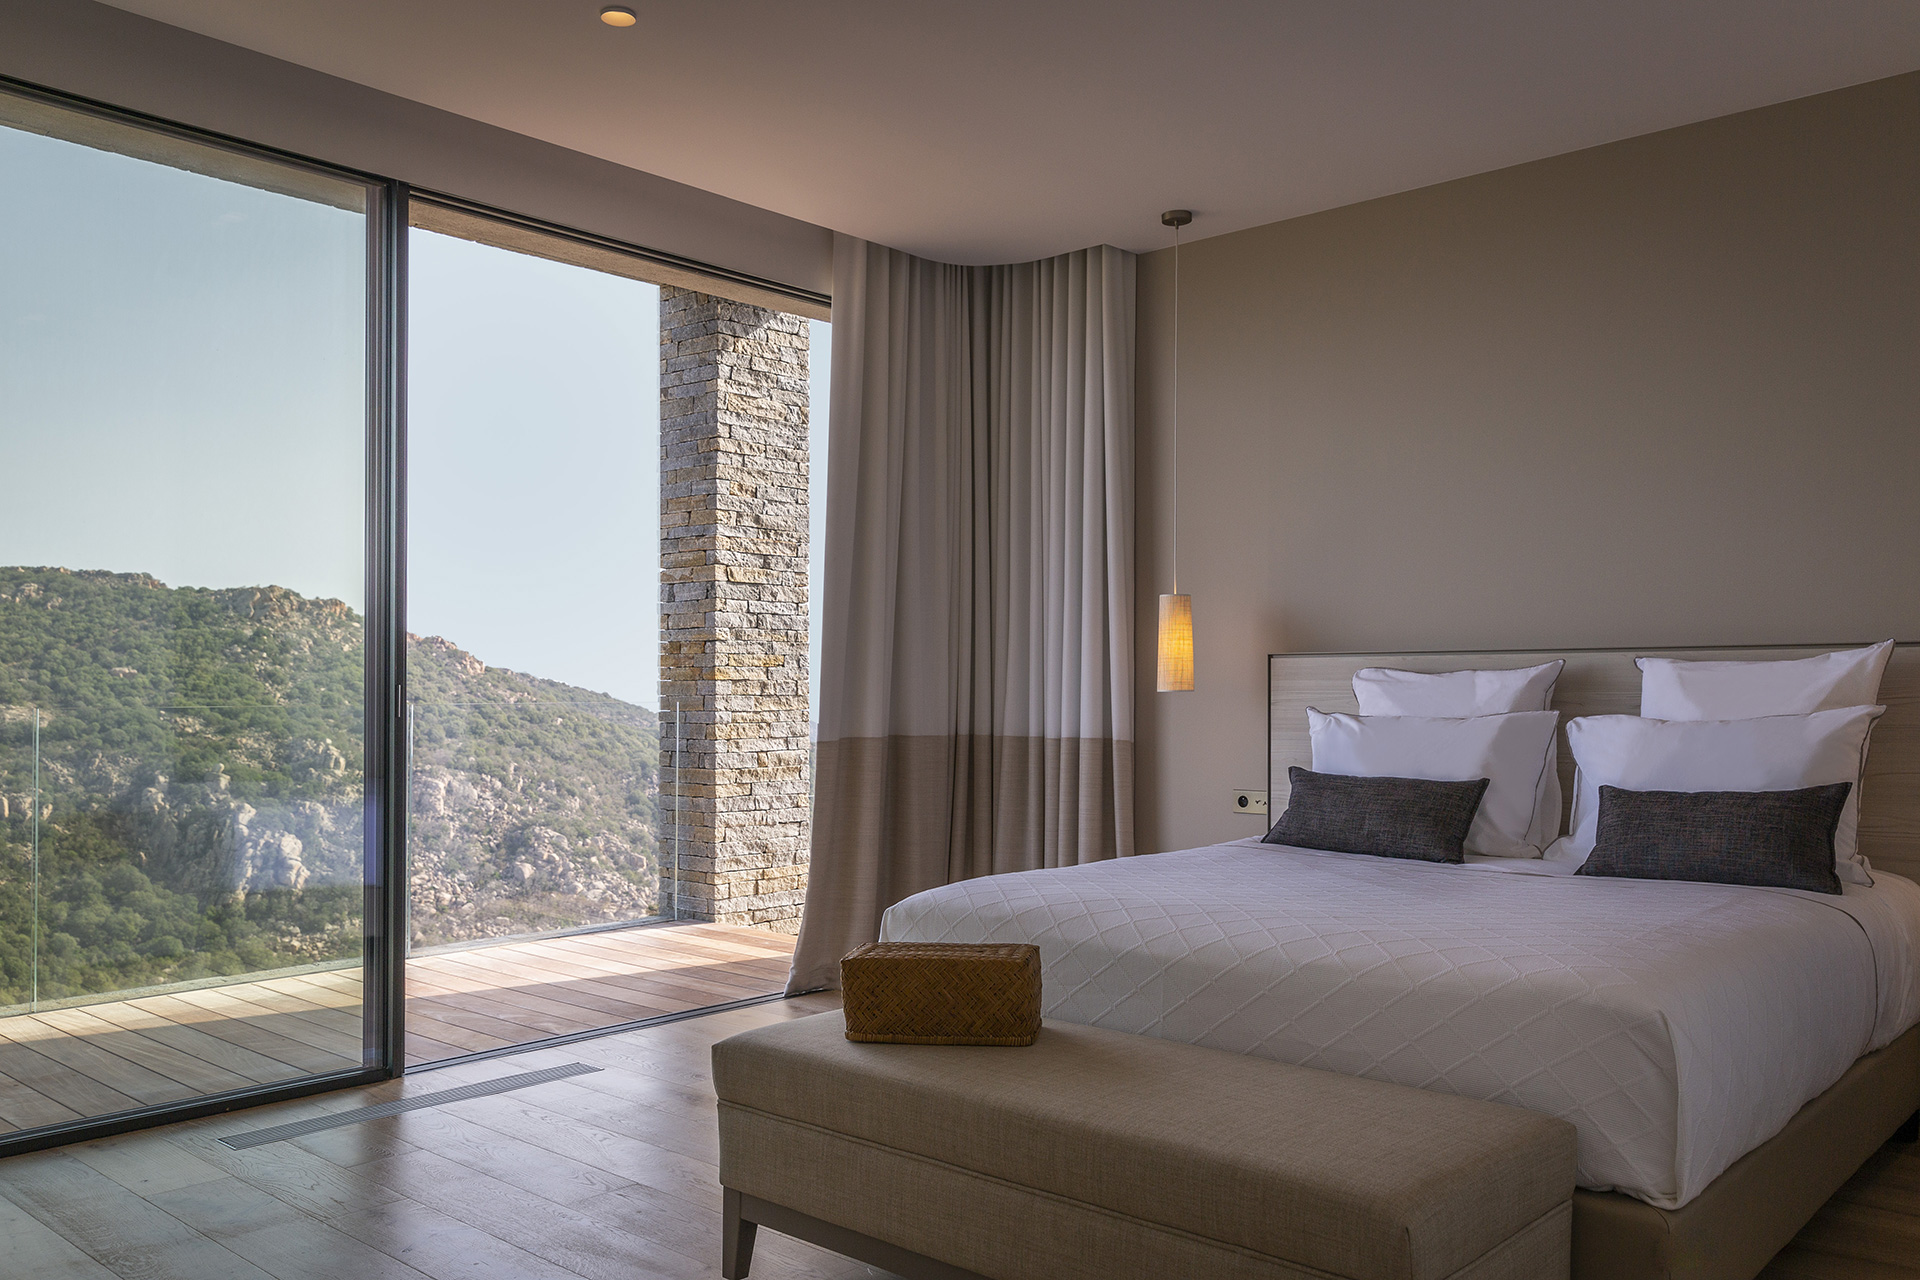 Chambre d’une villa en Corse par Borella Art Design